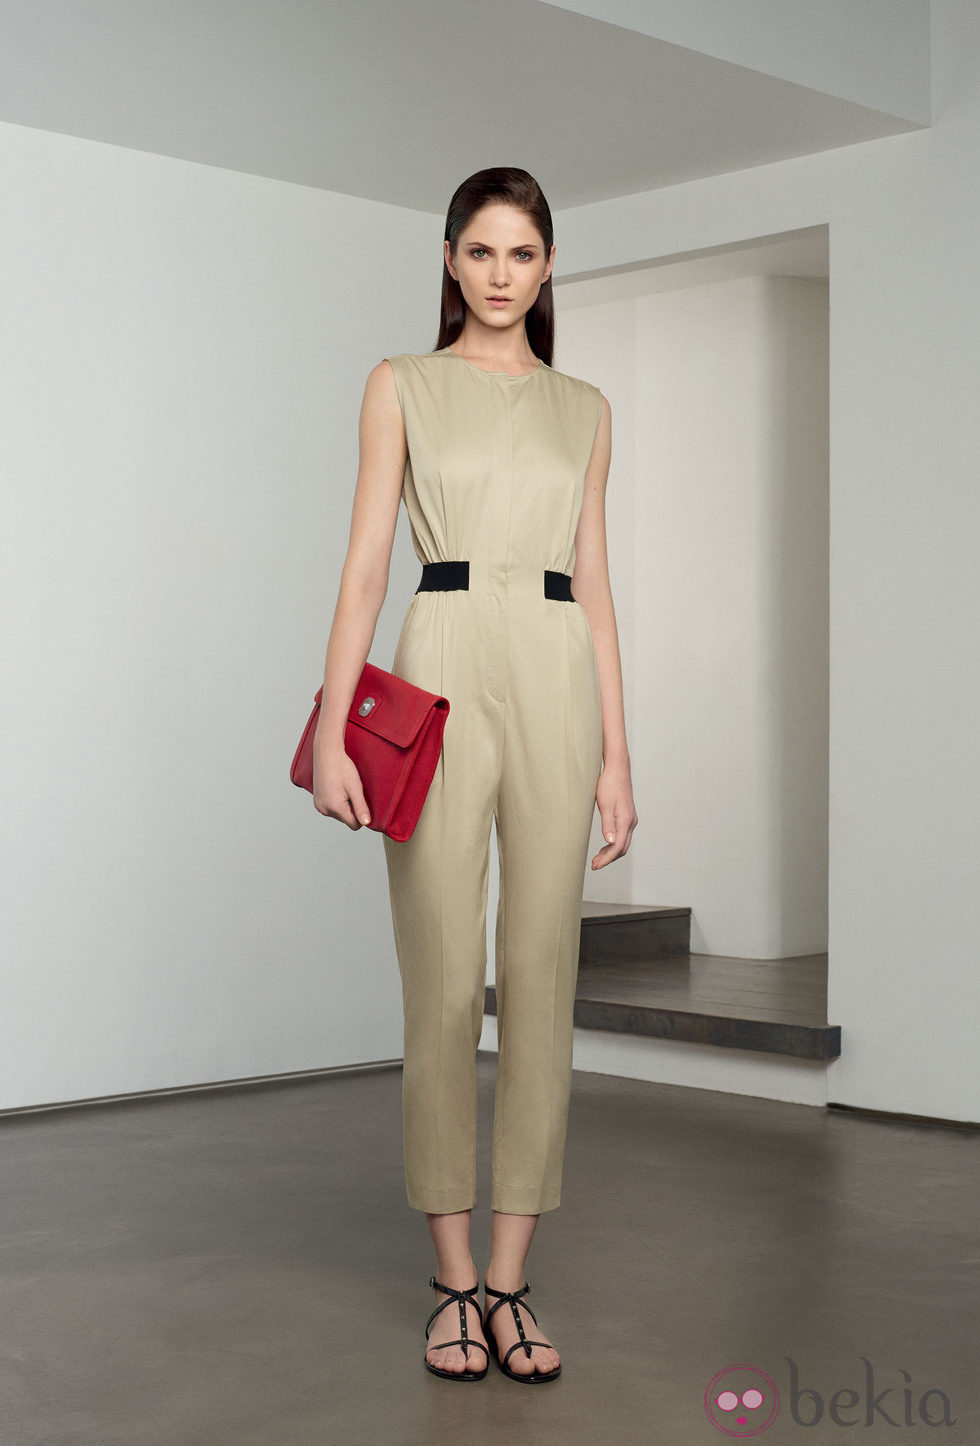 Mono ceñido a la cintura en tono beige oscuro de la colección 'Ready to wear' 2014 de Longchamp